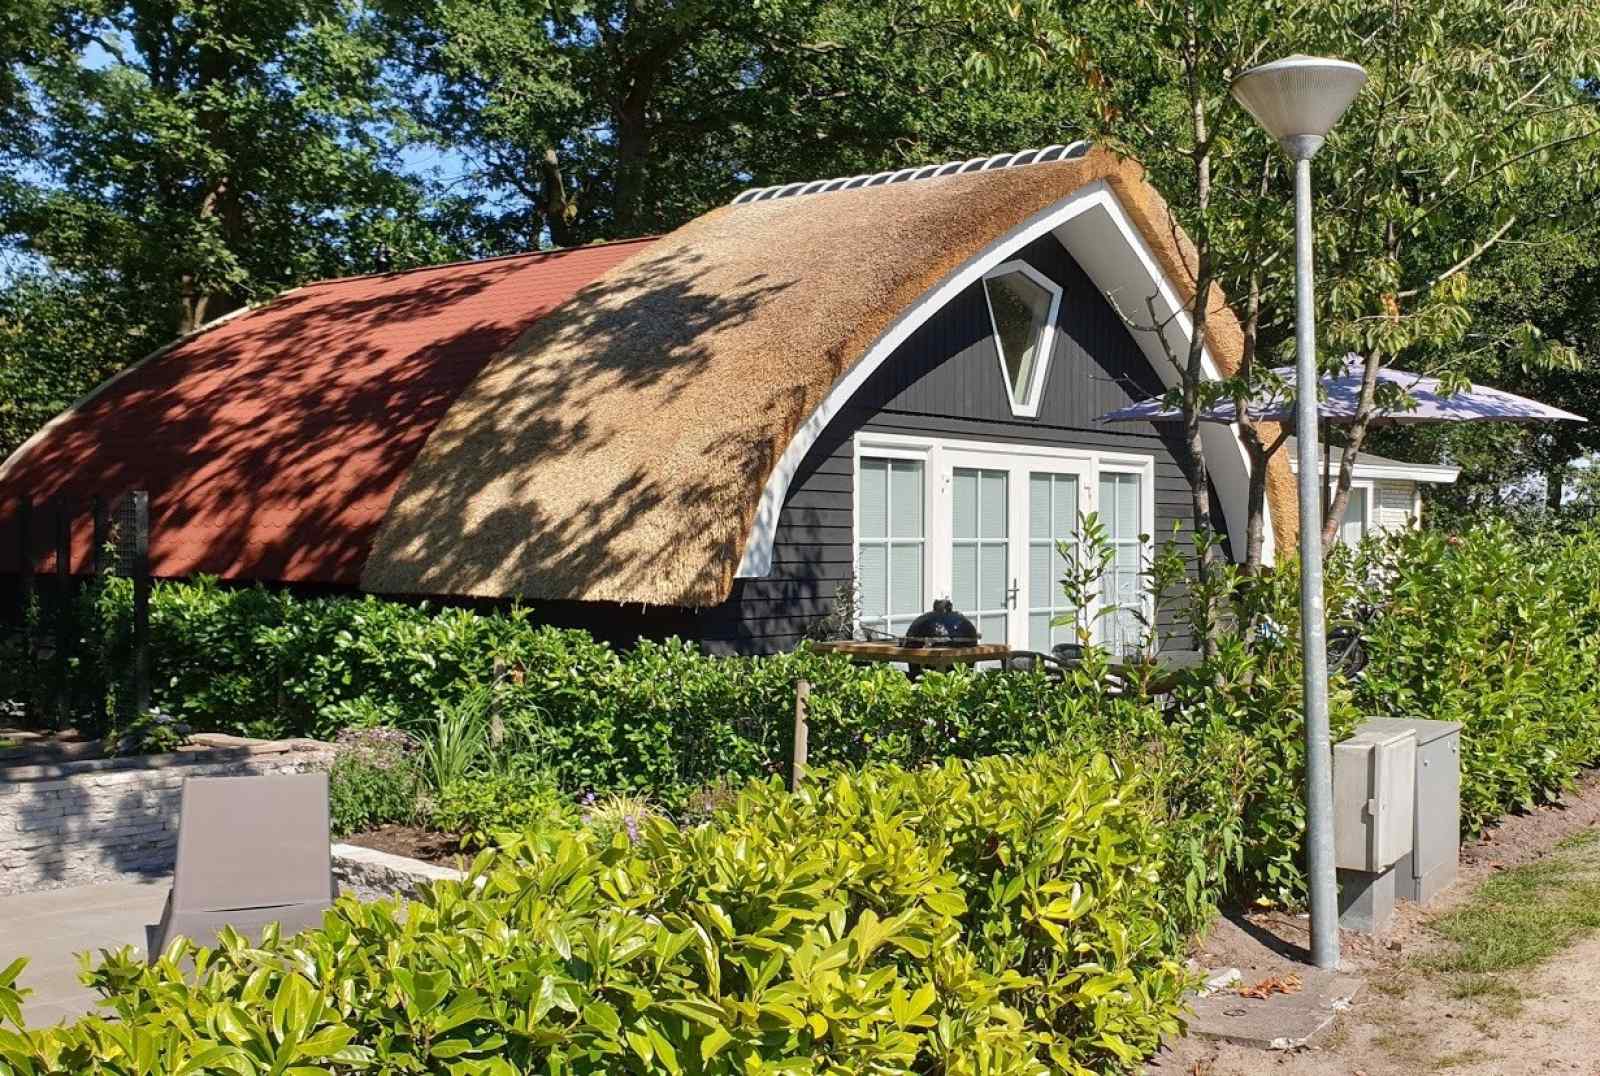 Zespersoons luxe vakantiehuis op familiepark nabij de Weerribben. - Nederland - Europa - De-Bult